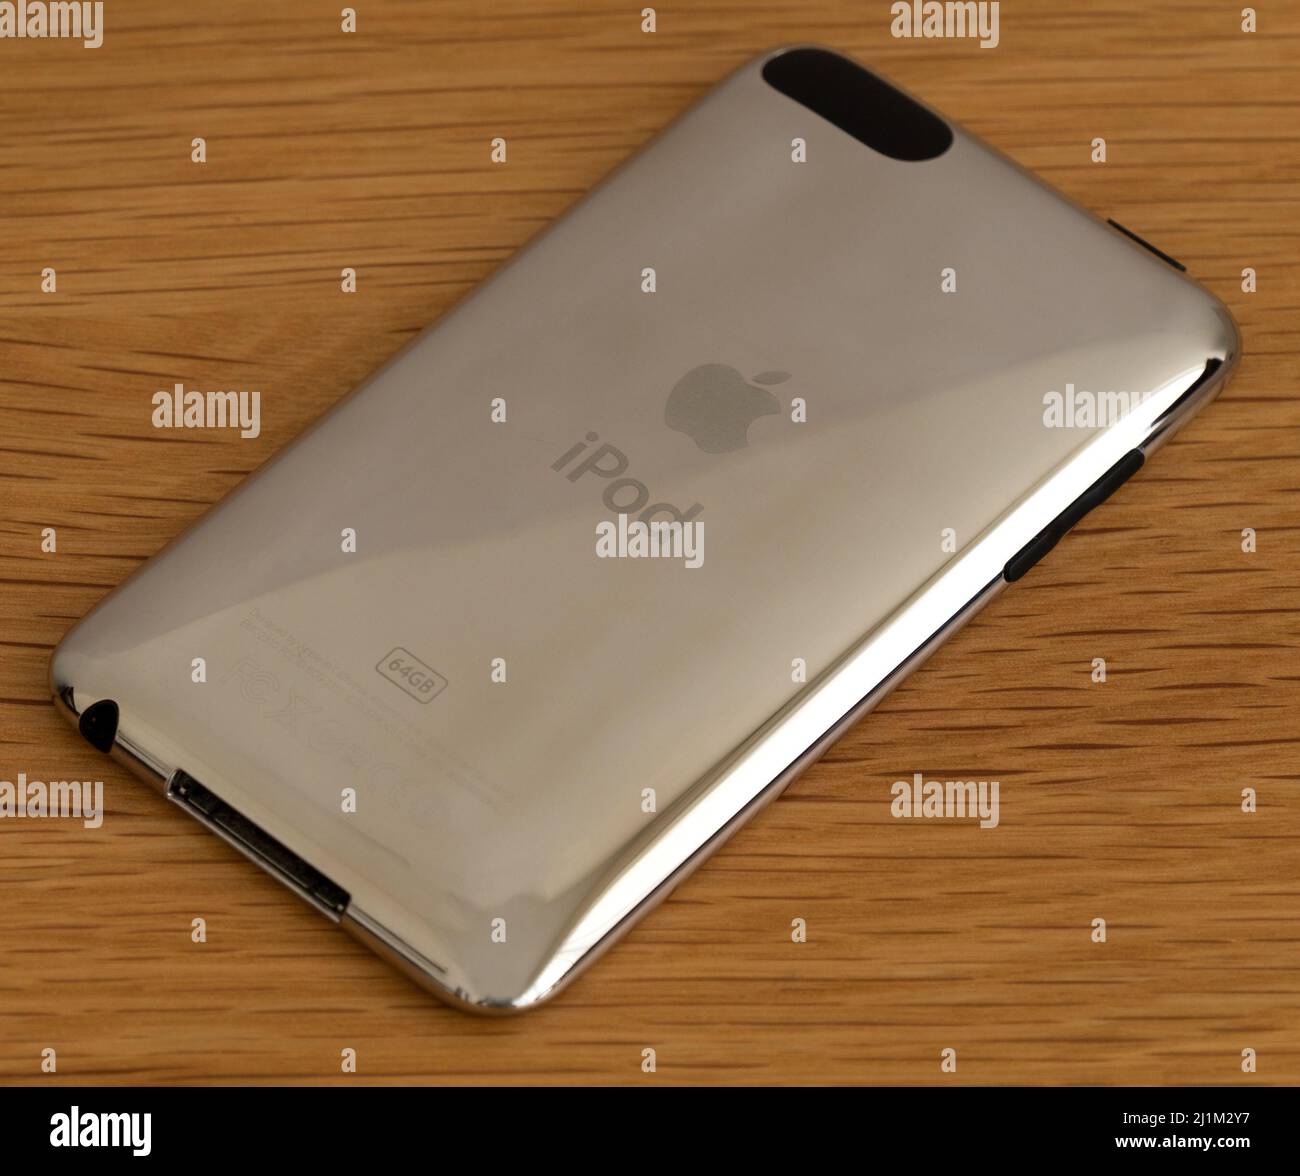 FOTOGRAFÍA DE STOCK - Apple iPod Touch (3rd generación) mostrando cubierta posterior de aluminio plateado cromado pulido con logotipos grabados y detalles del producto Foto de stock